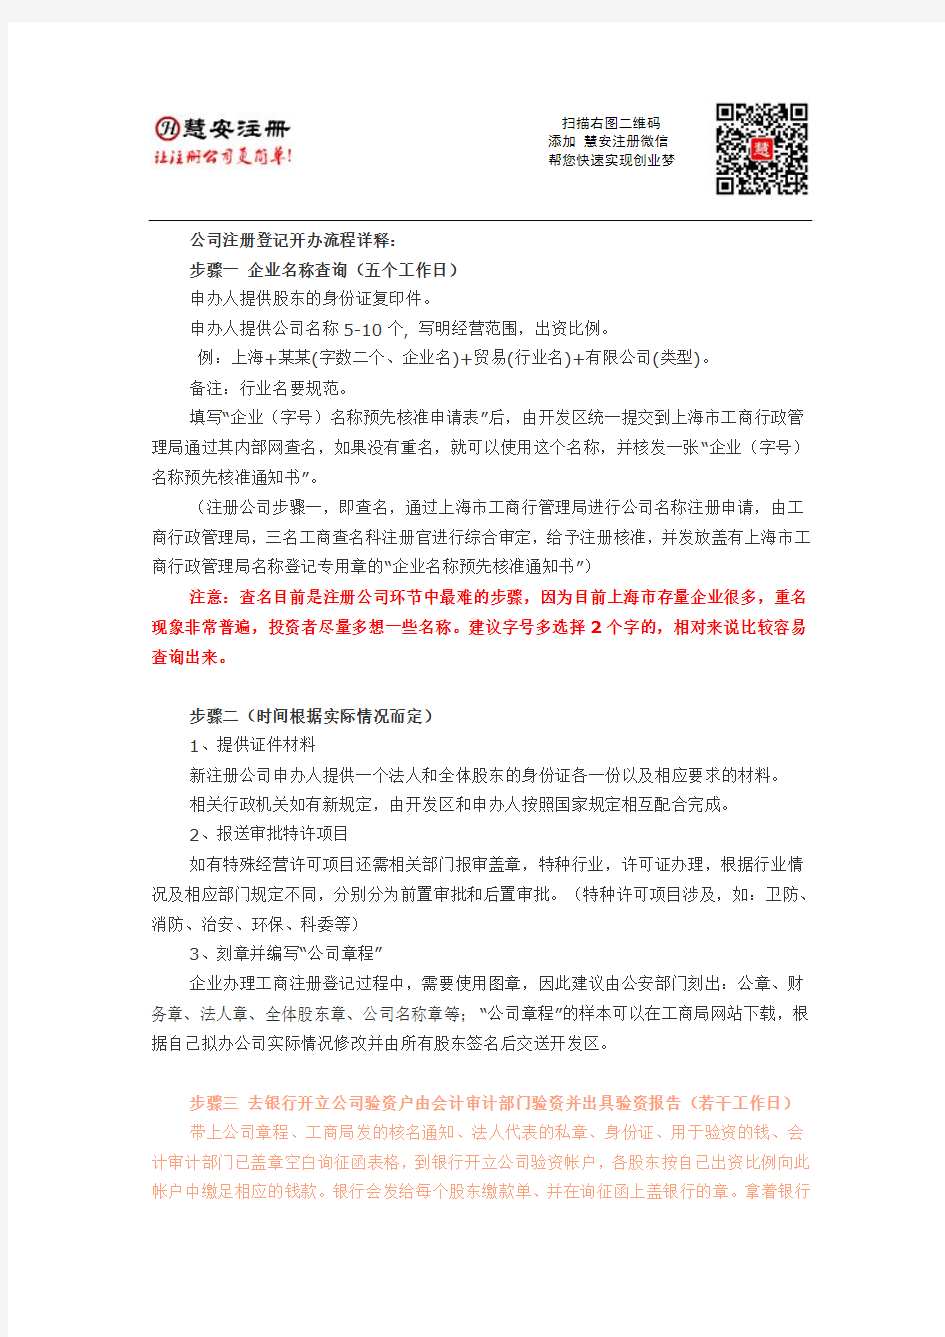 上海注册公司流程程序详解